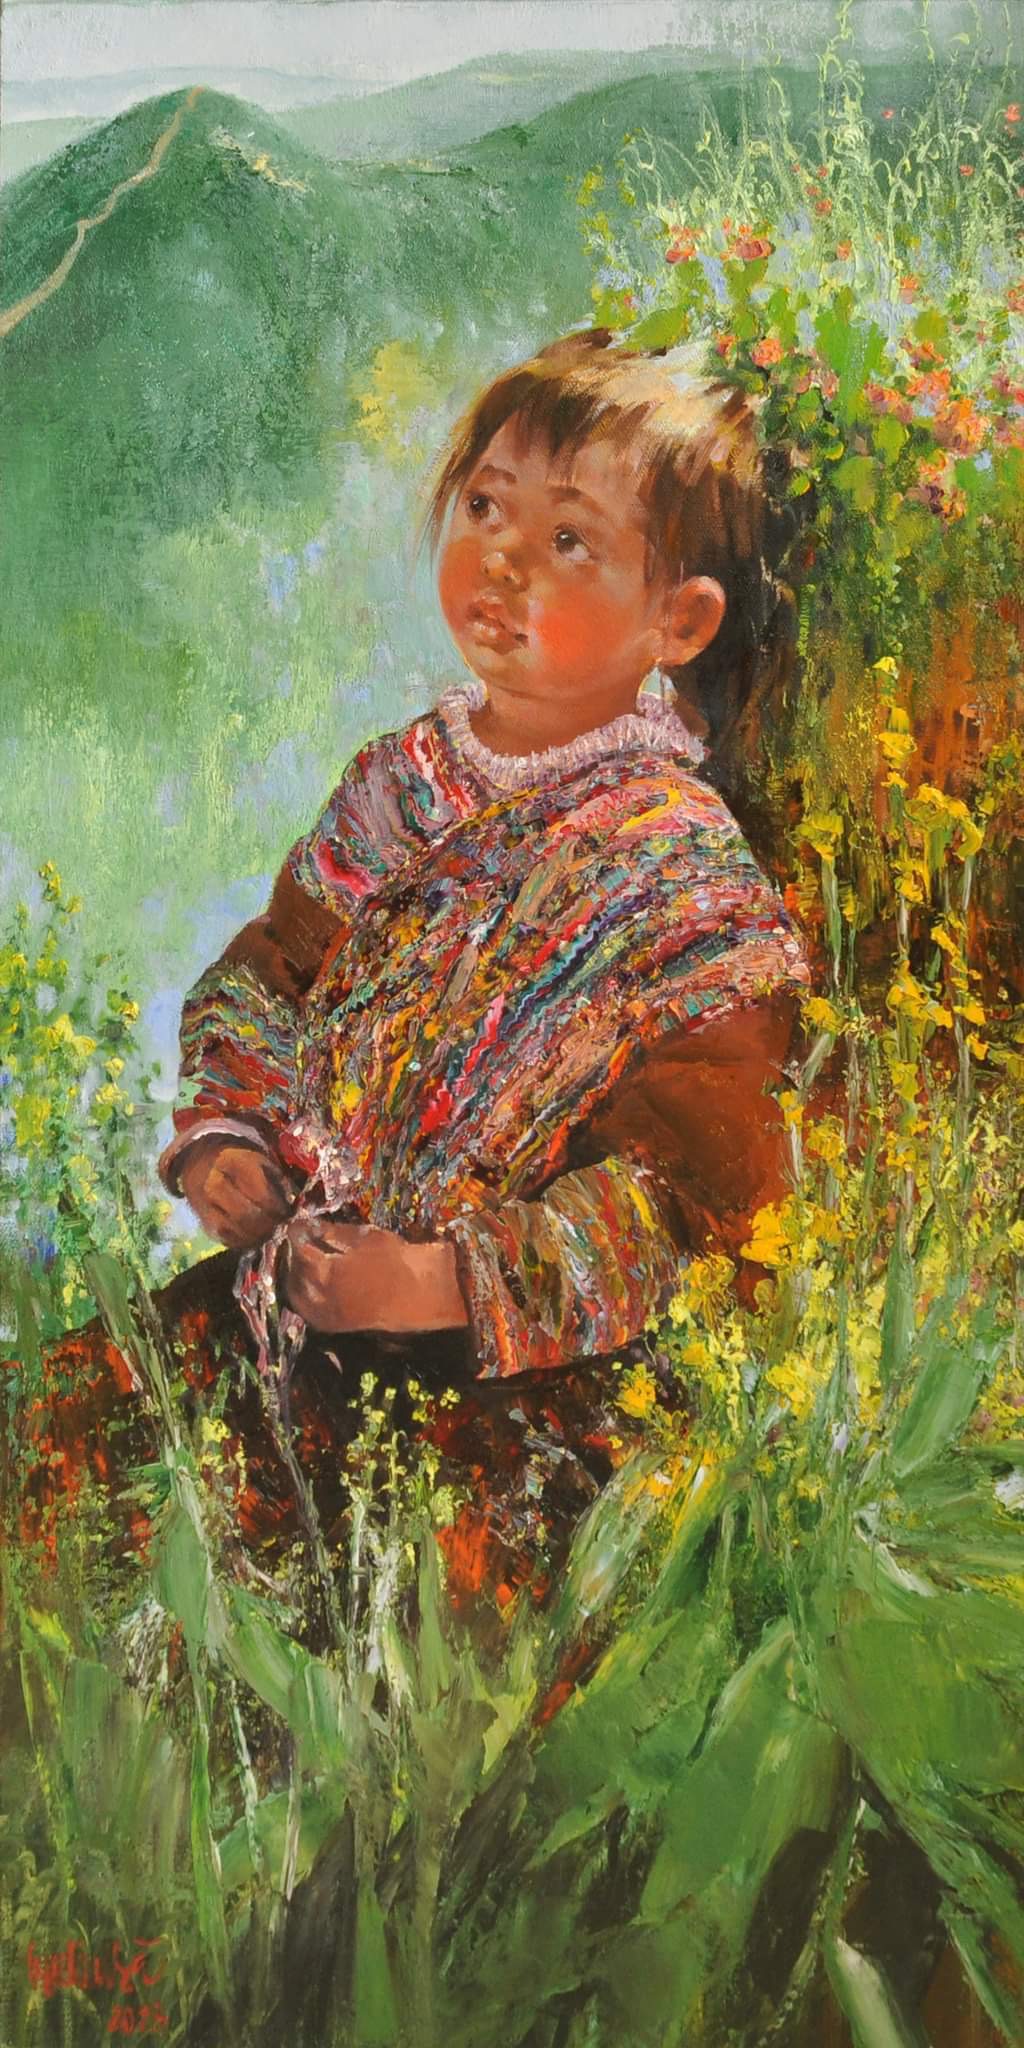 Họa sĩ Ngụy Đình Hà tham gia với một bức tranh chân dung em bé mang tên Đường về nhà vẽ chân dung em bé vùng cao với bảng màu tương phản rực rỡ. 